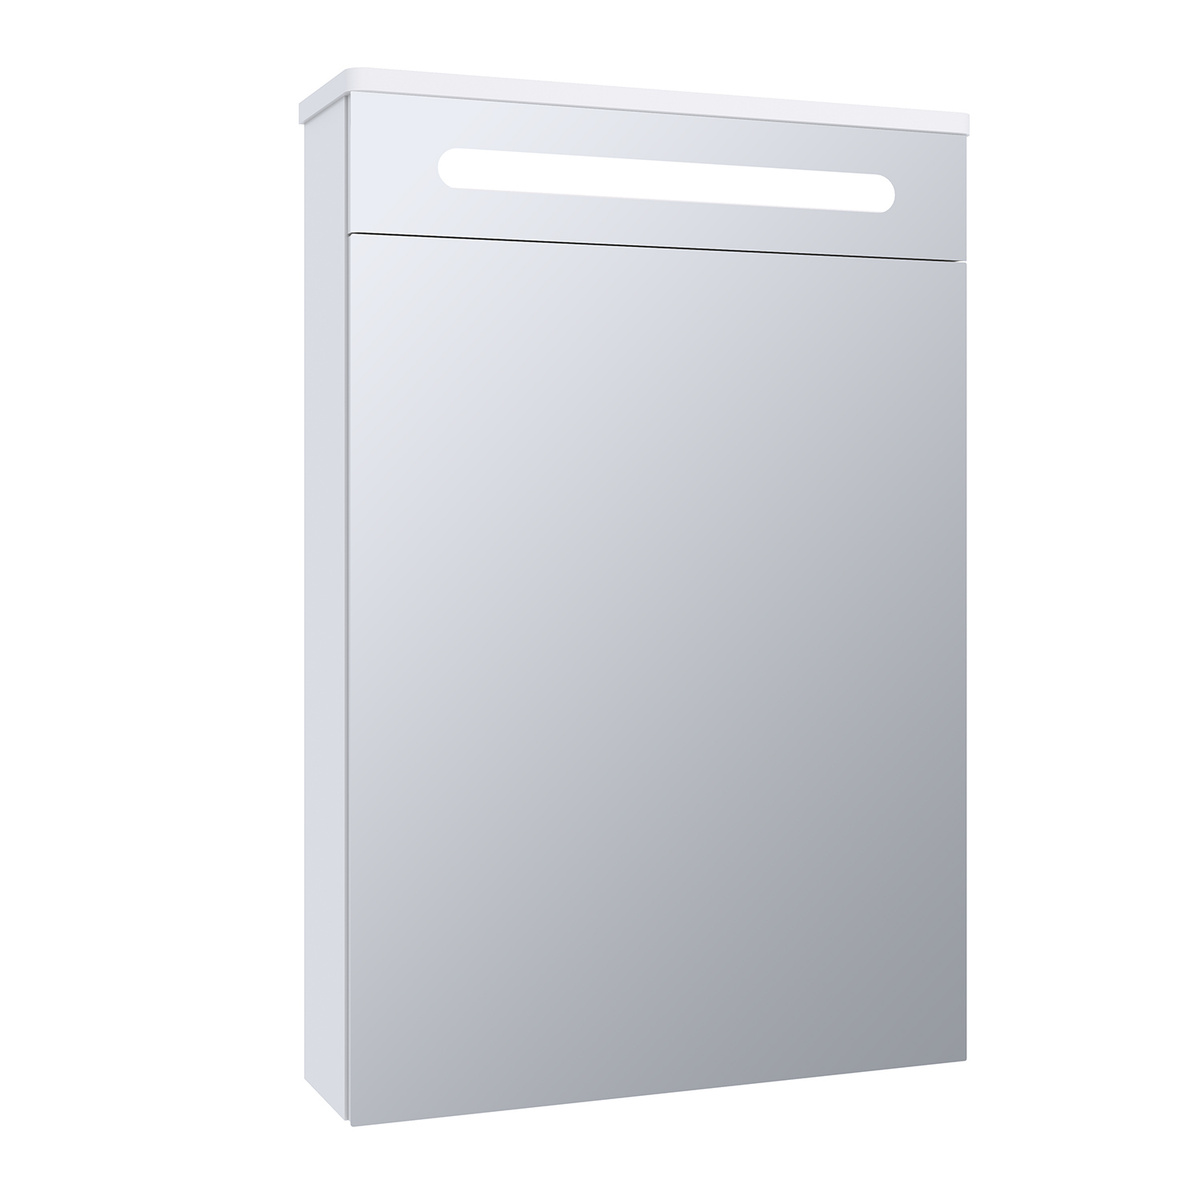 Зеркало шкаф для ванной / с подсветкой / Runo / Парма 50 / полка для ваннойТекст при отключенной в браузере загрузке изображений